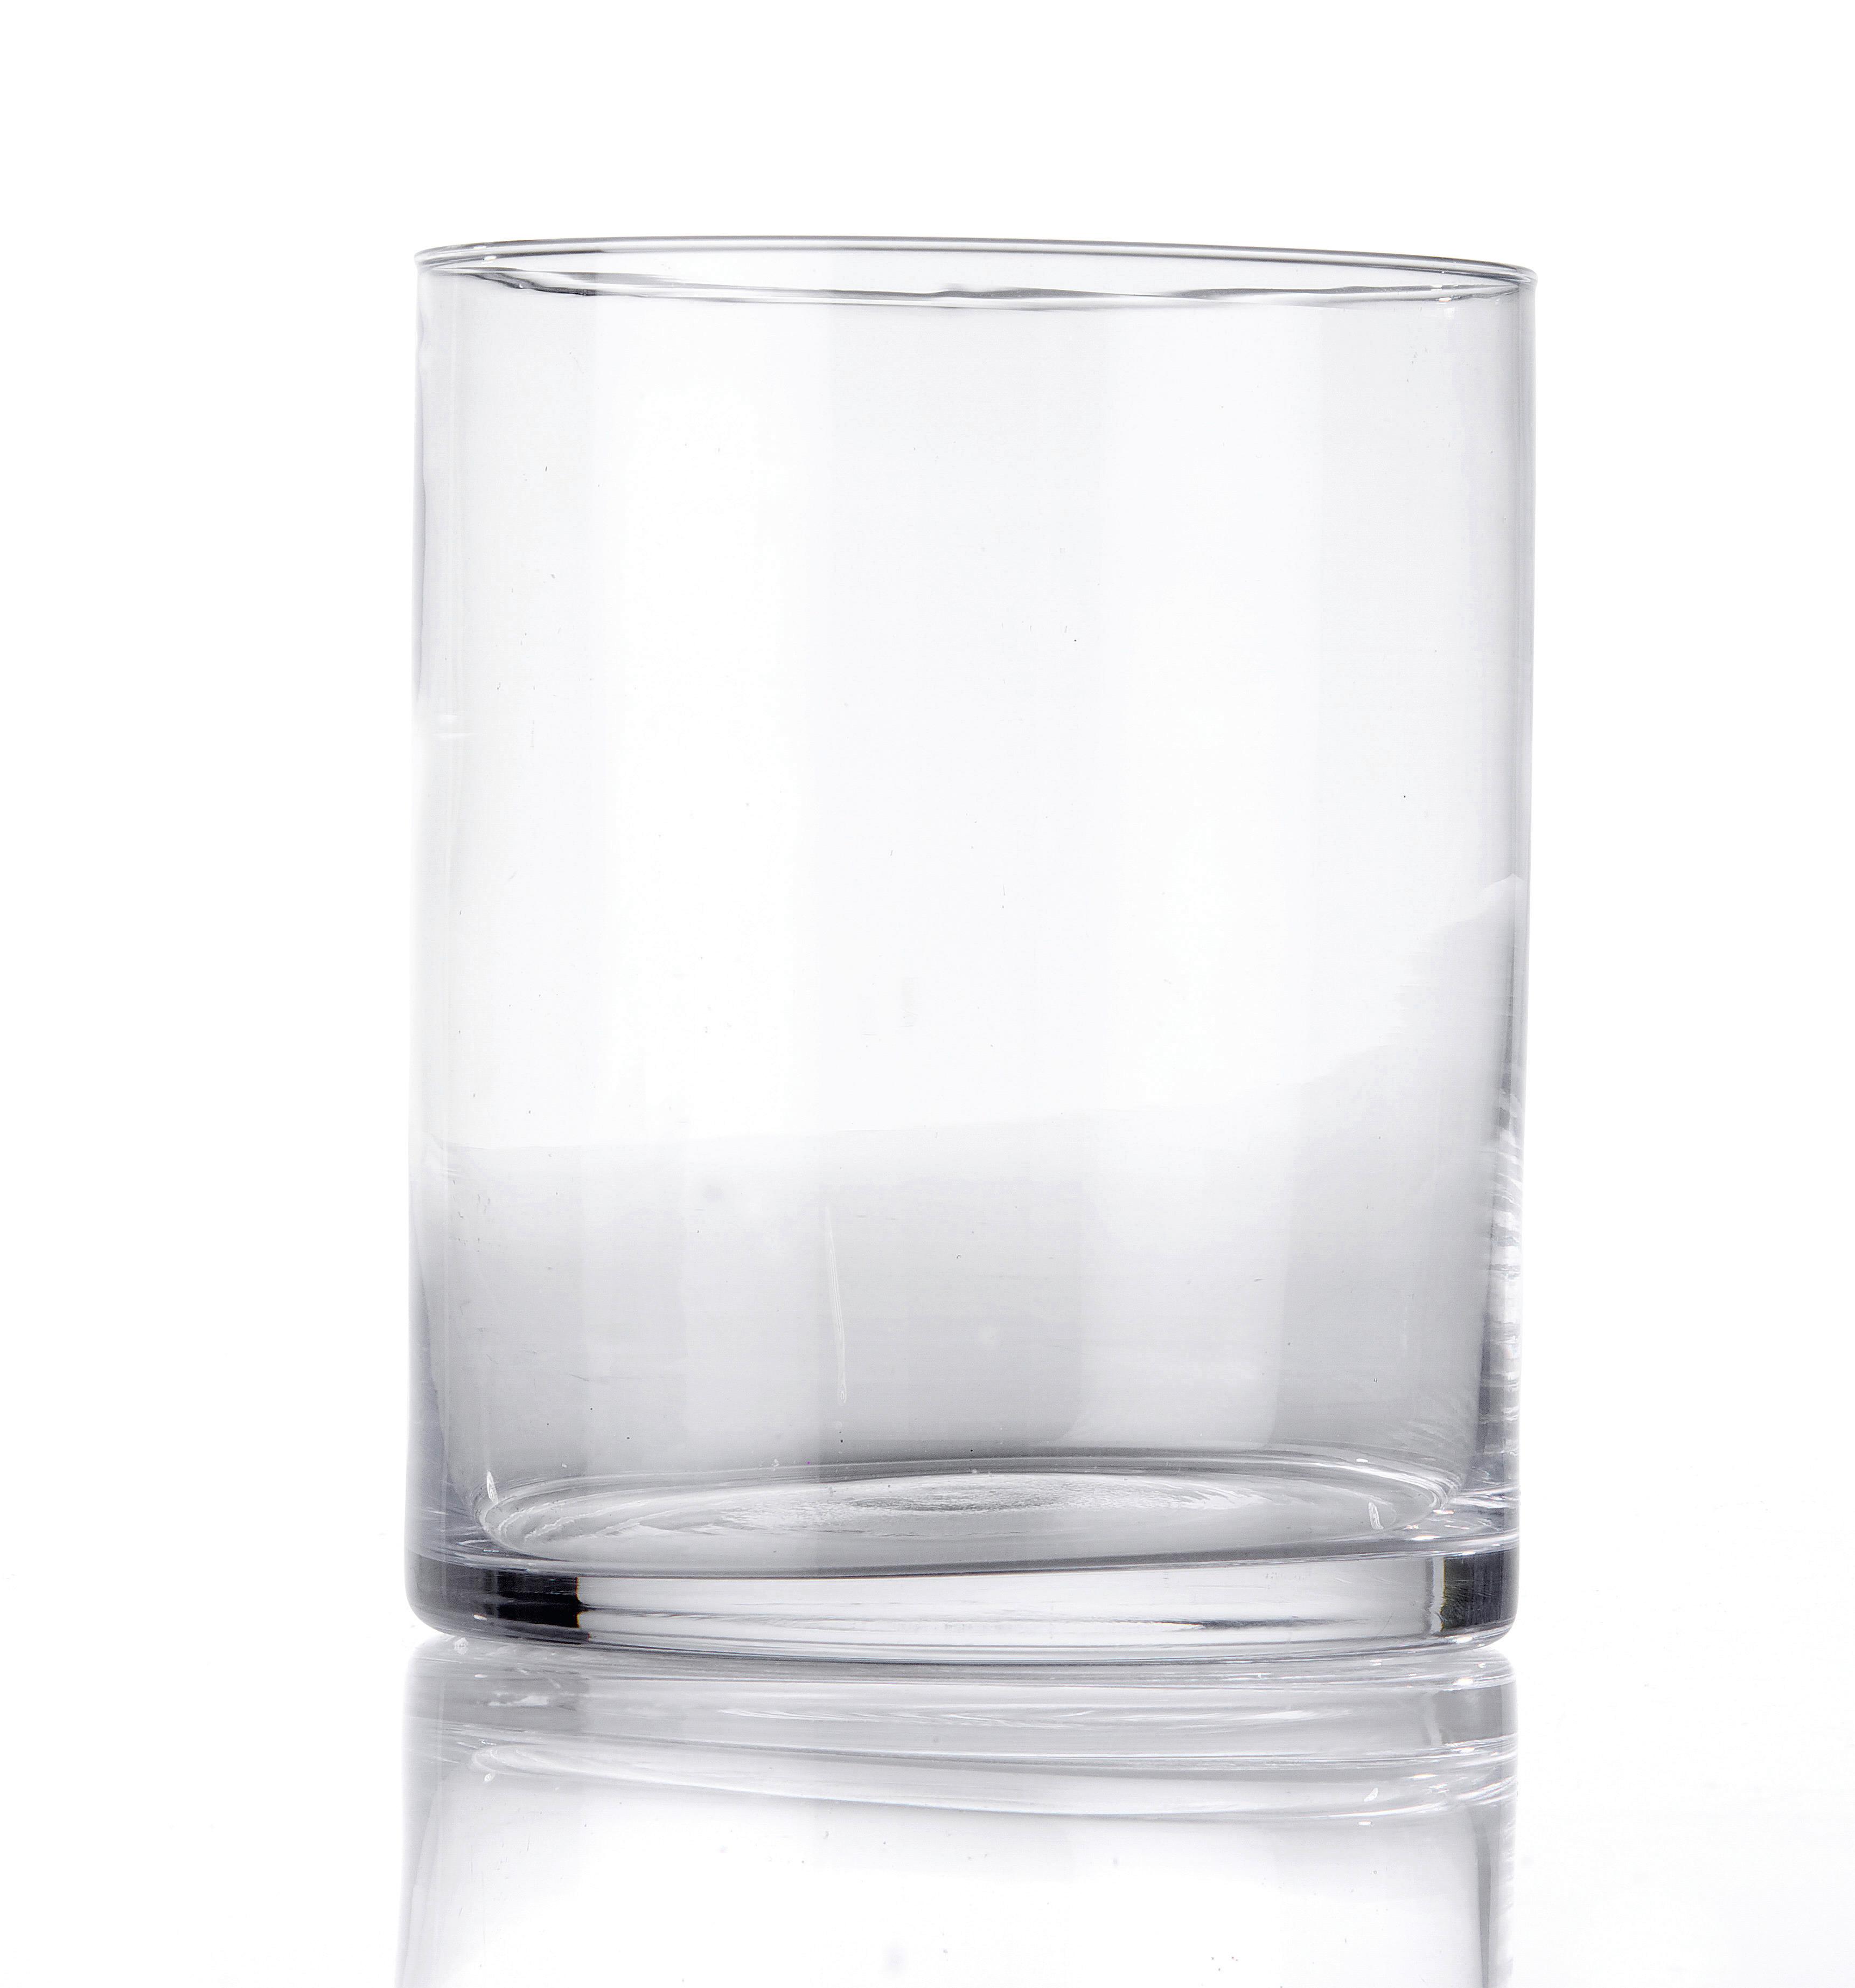 Vase Andrea aus Glas - Klar, Glas (13/15cm) - Modern Living